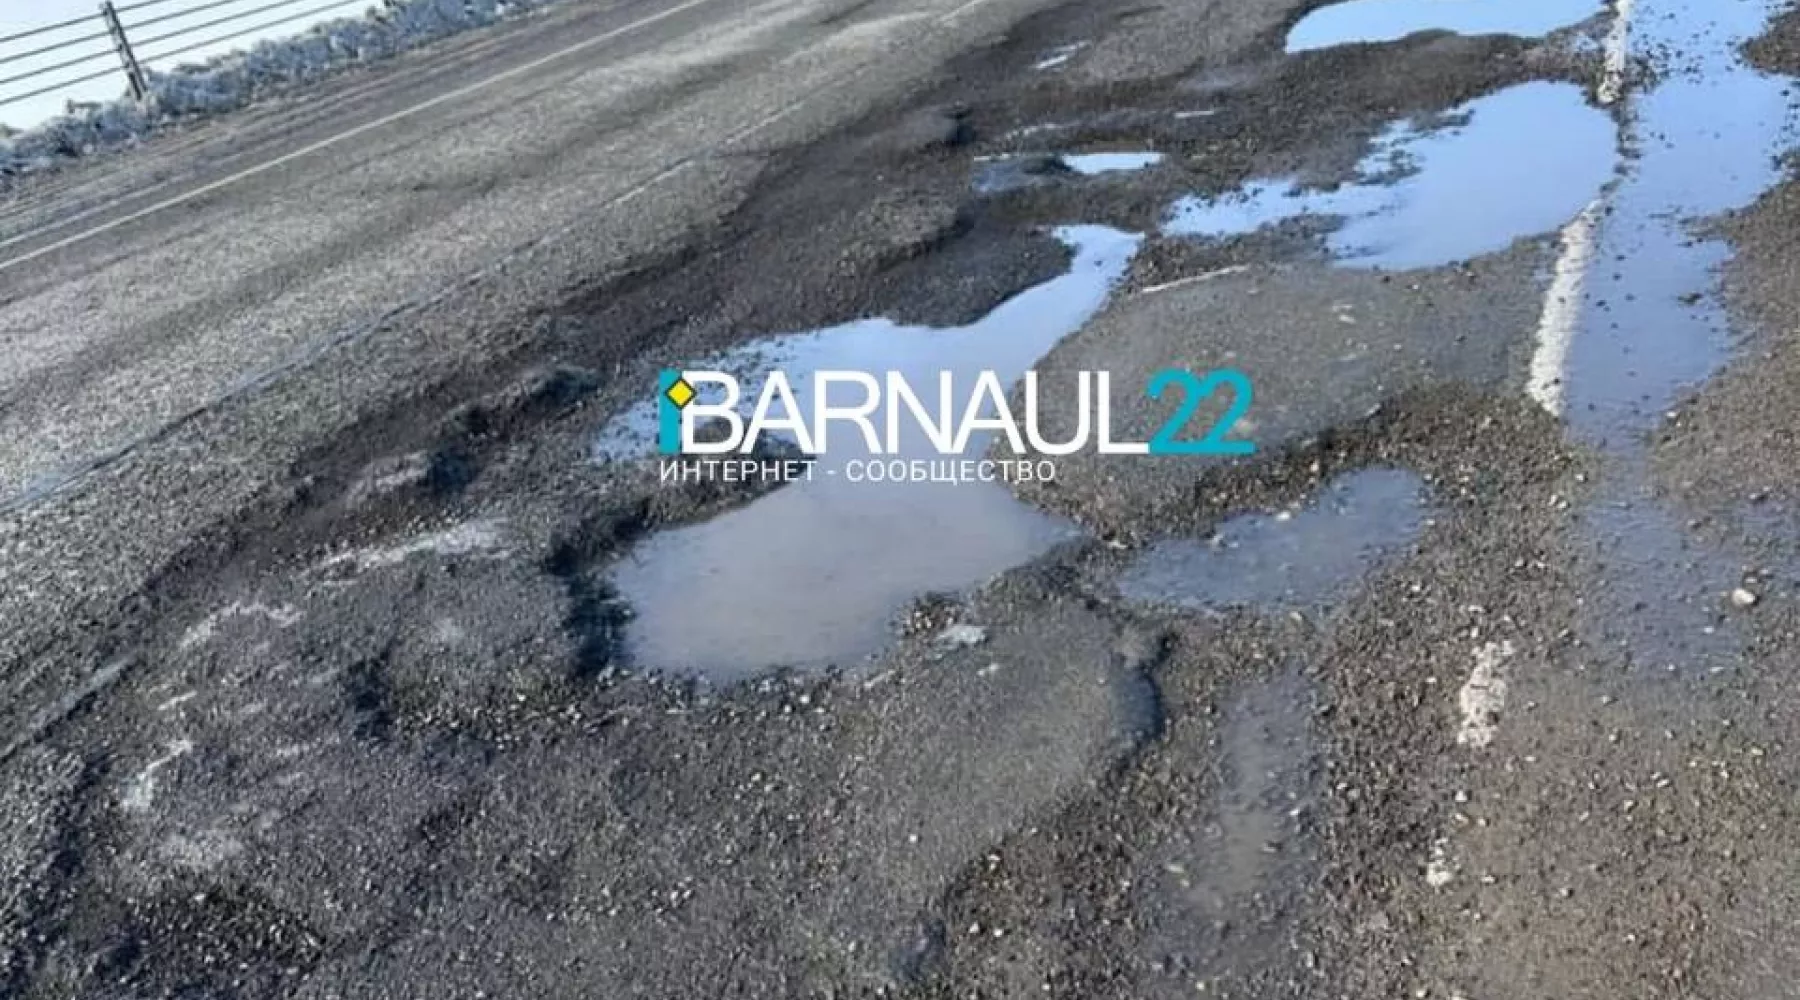 «Как после бомбежки»: автомобилисты жалуются на участок трассы Бийск - Барнаул